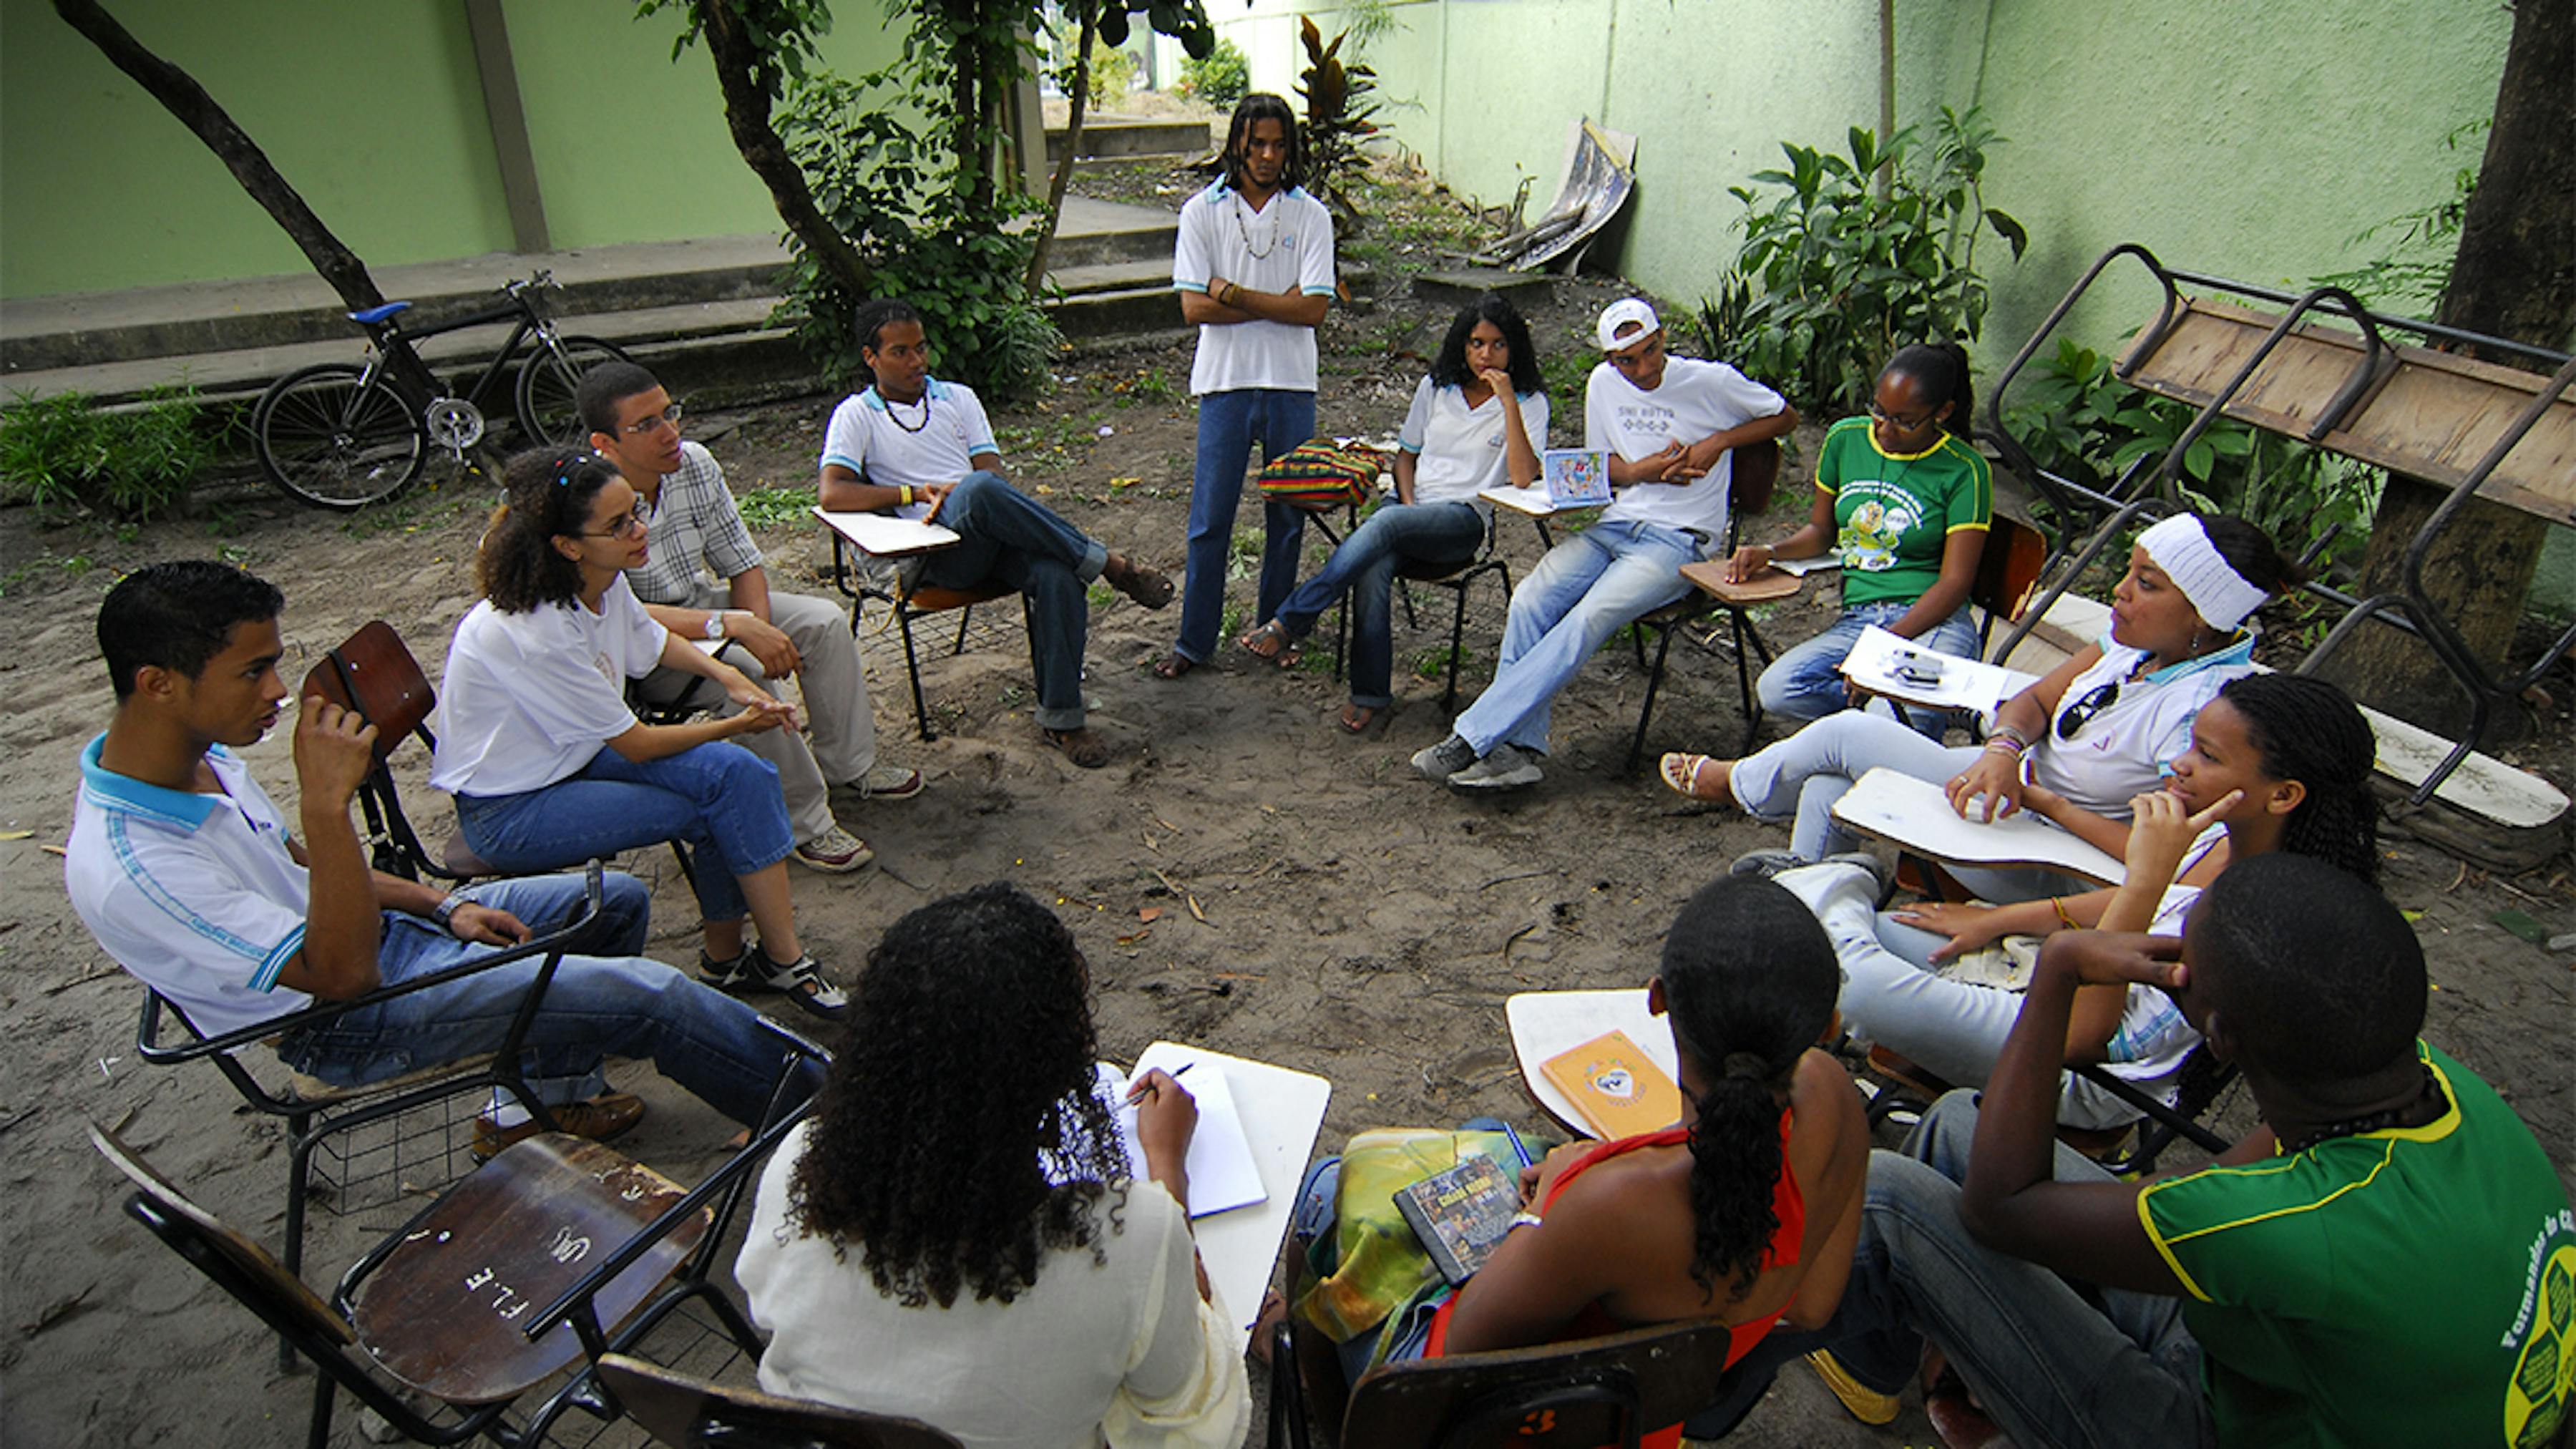 Brasile, adolescenti discutono di questioni sociali, tra cui razzismo.